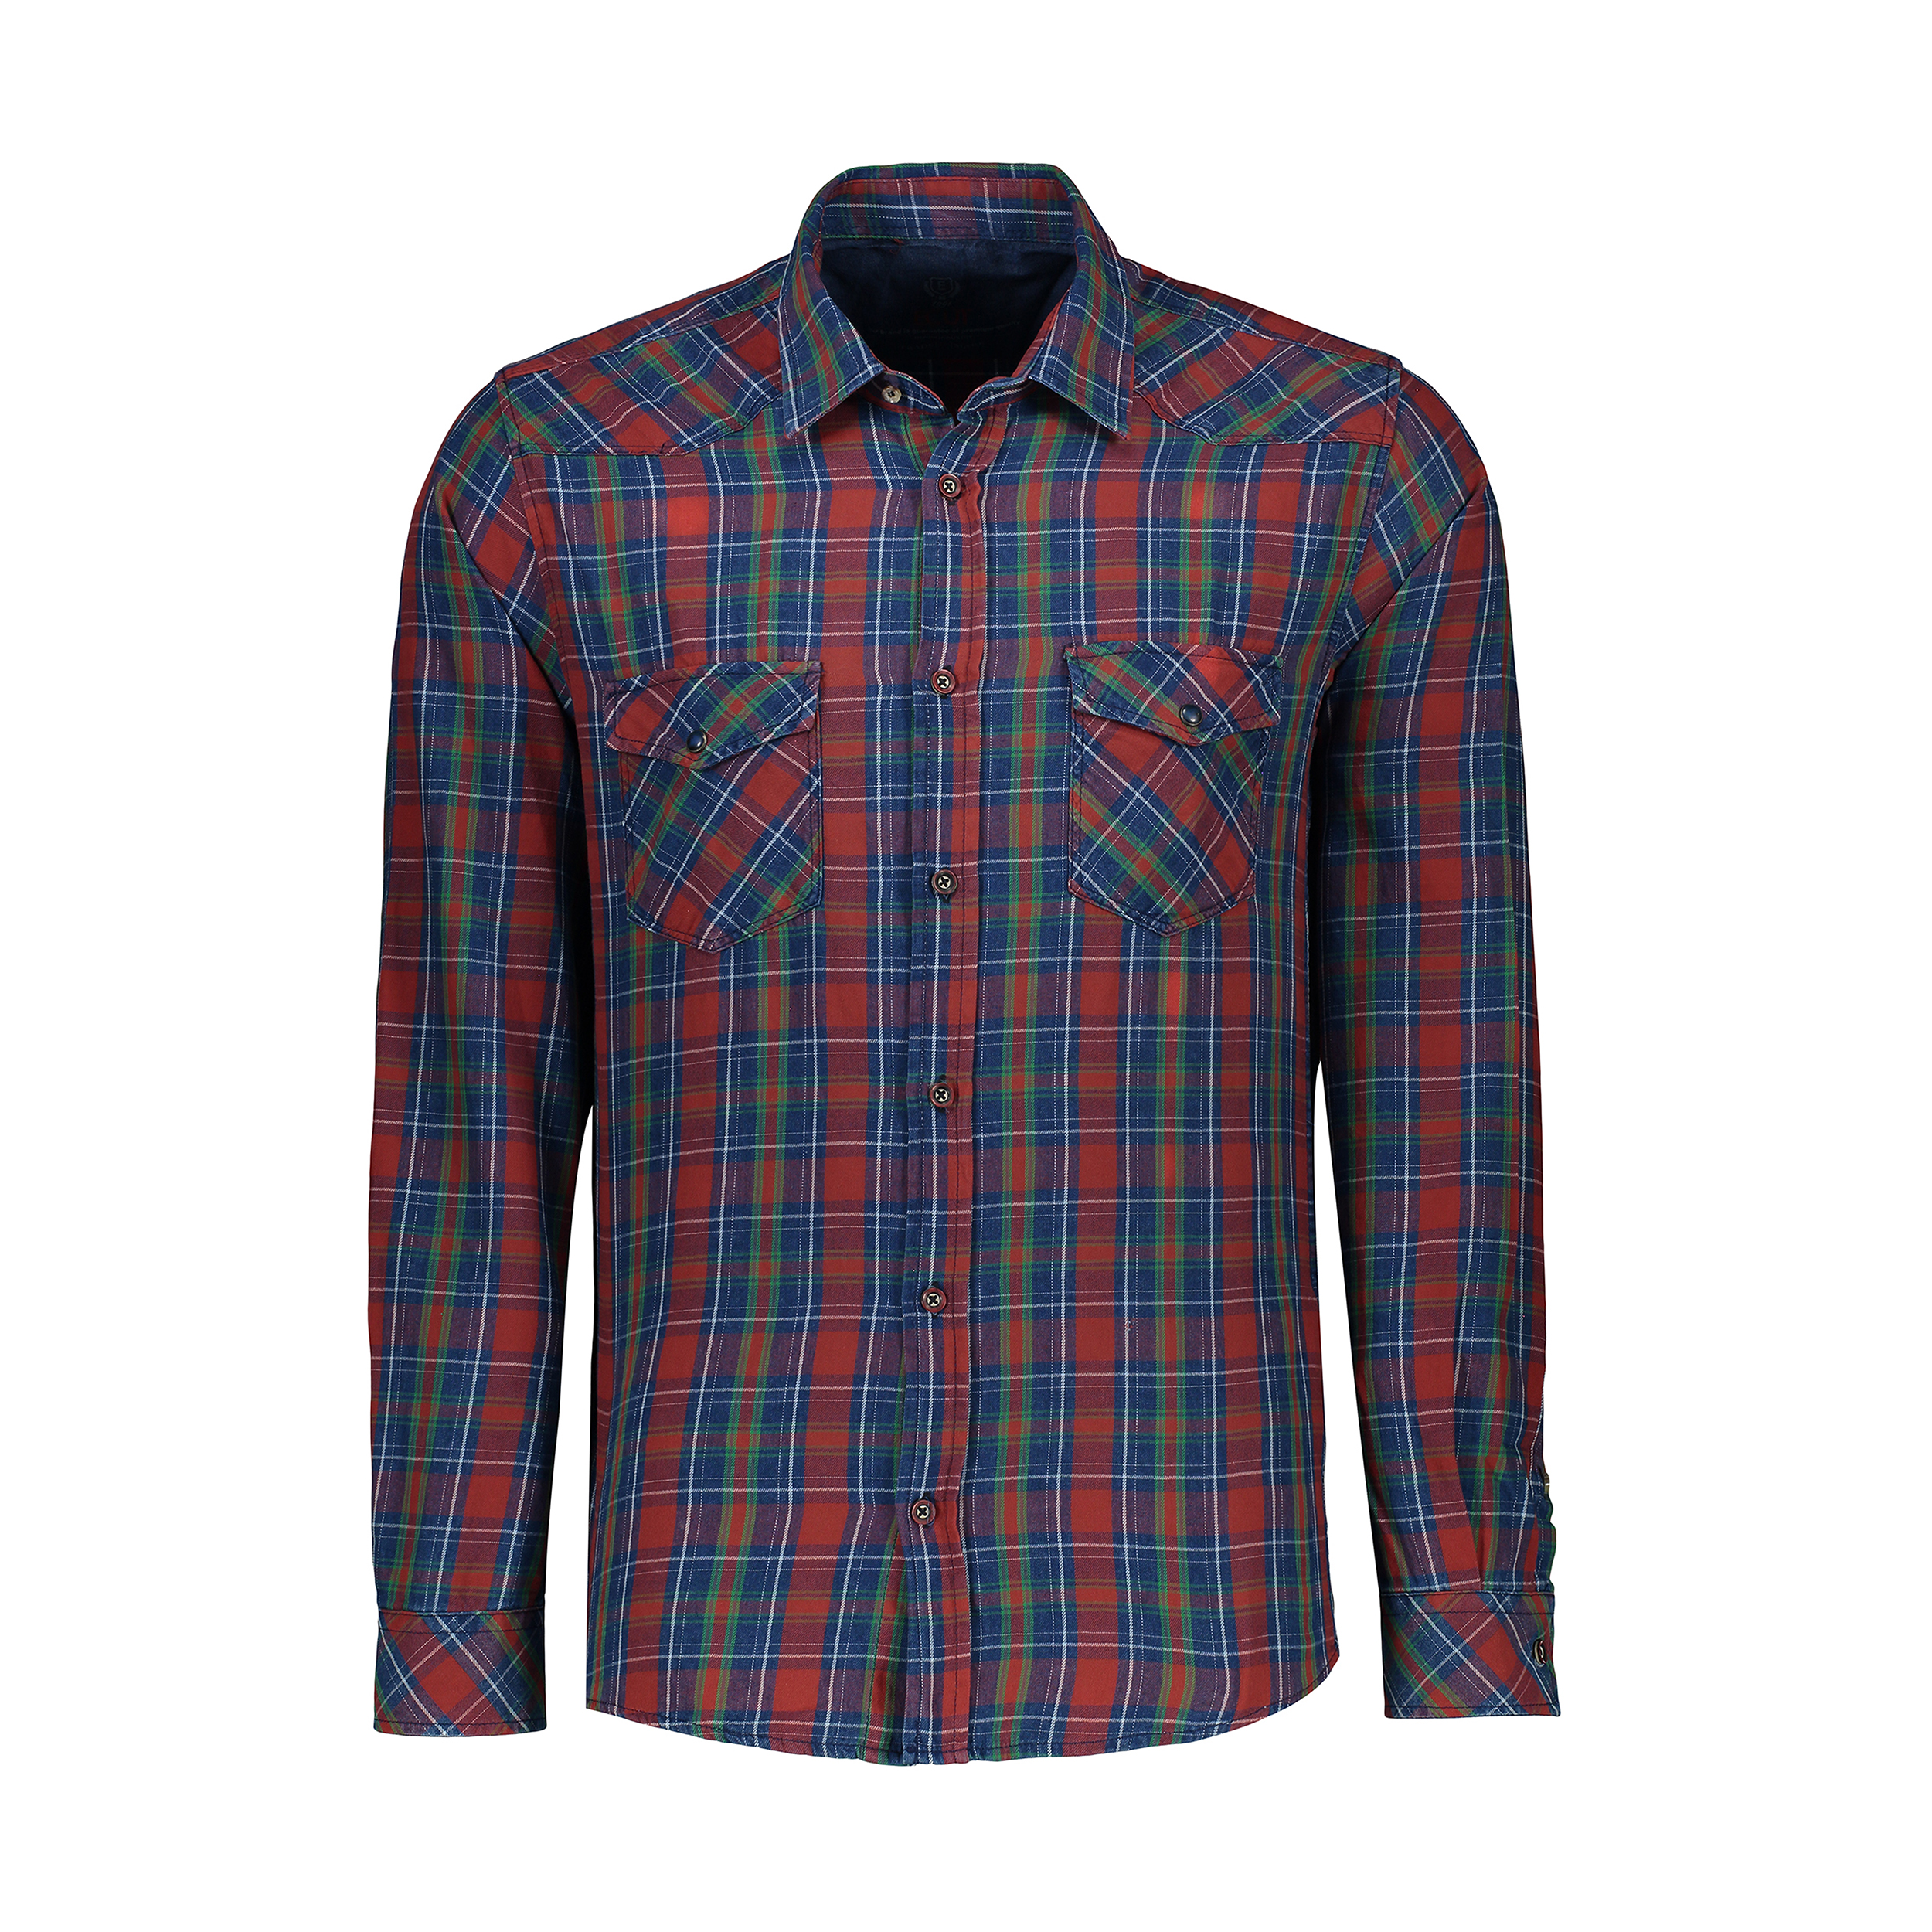 پیراهن آستین بلند مردانه ایکات مدل چهارخانه درشت ST1151465 رنگ قرمز